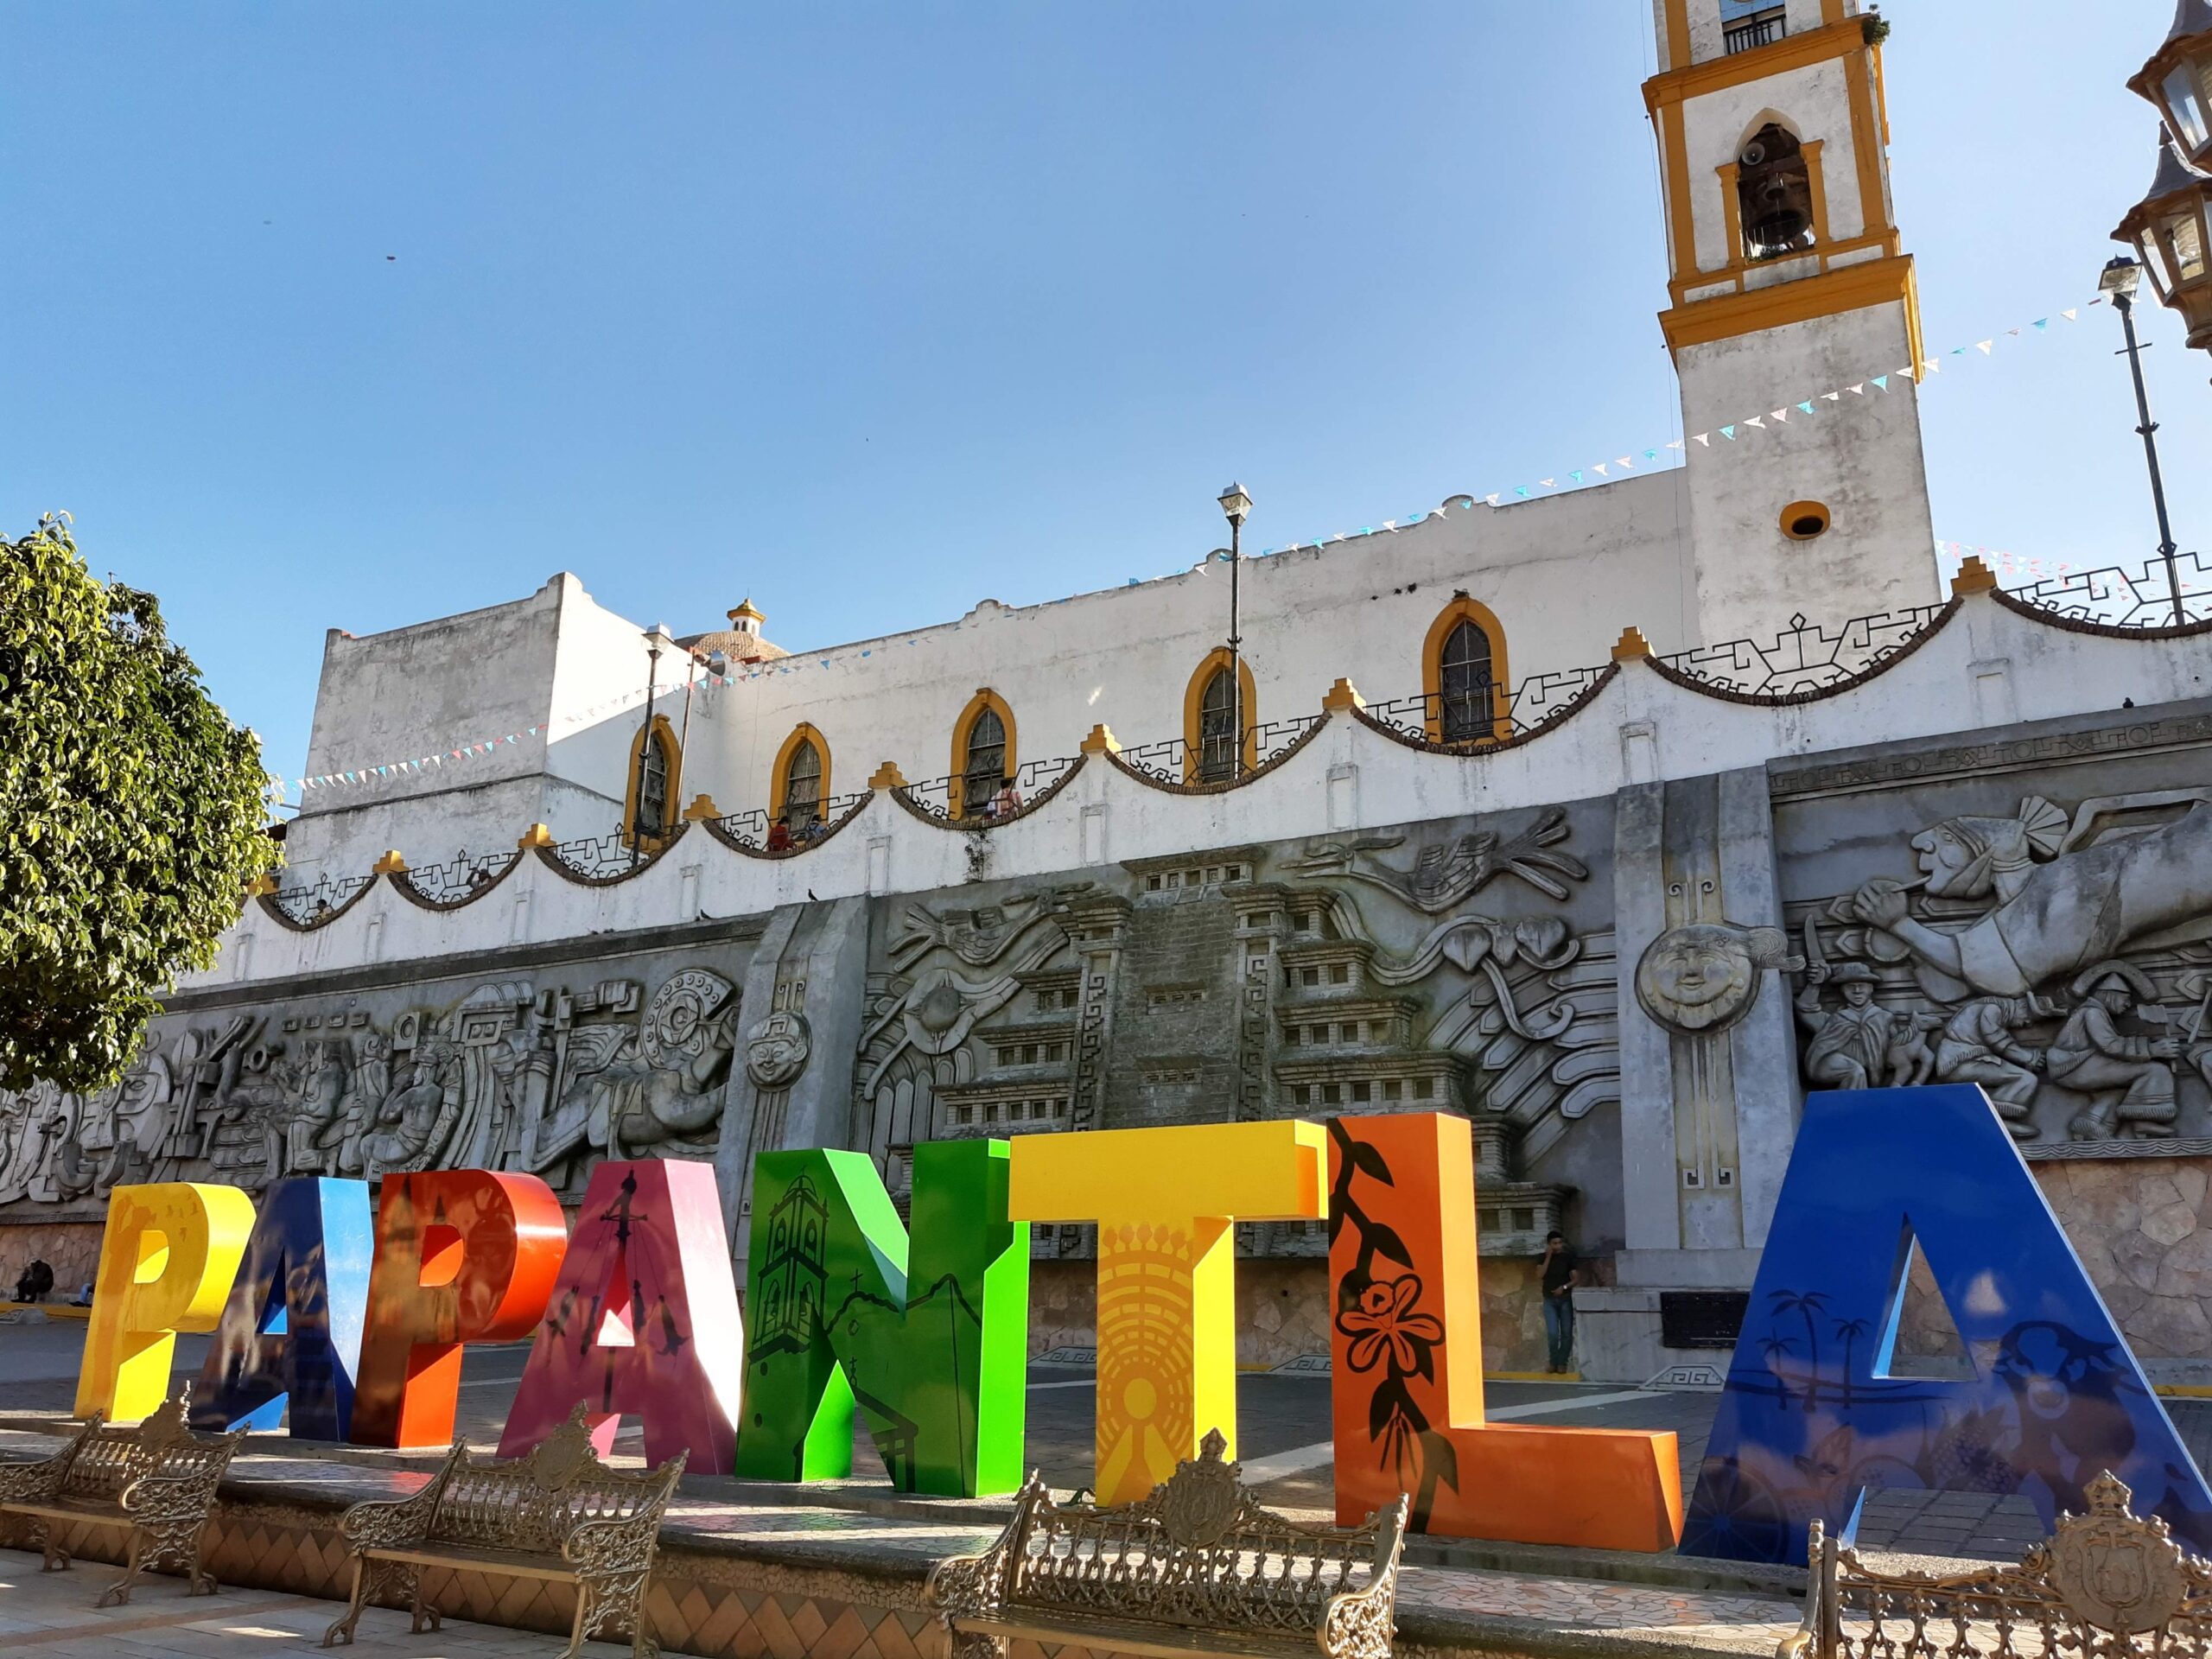 Papantla, el pueblo mágico con olor a vainilla en Veracruz Veracruz es un estado de nuestro país que cuenta con seis pueblos mágicos, uno de ellos es Papantla, un maravilloso lugar conocido como la “ciudad del trueno” y el hogar de los voladores.   https://larevistadelsureste.com